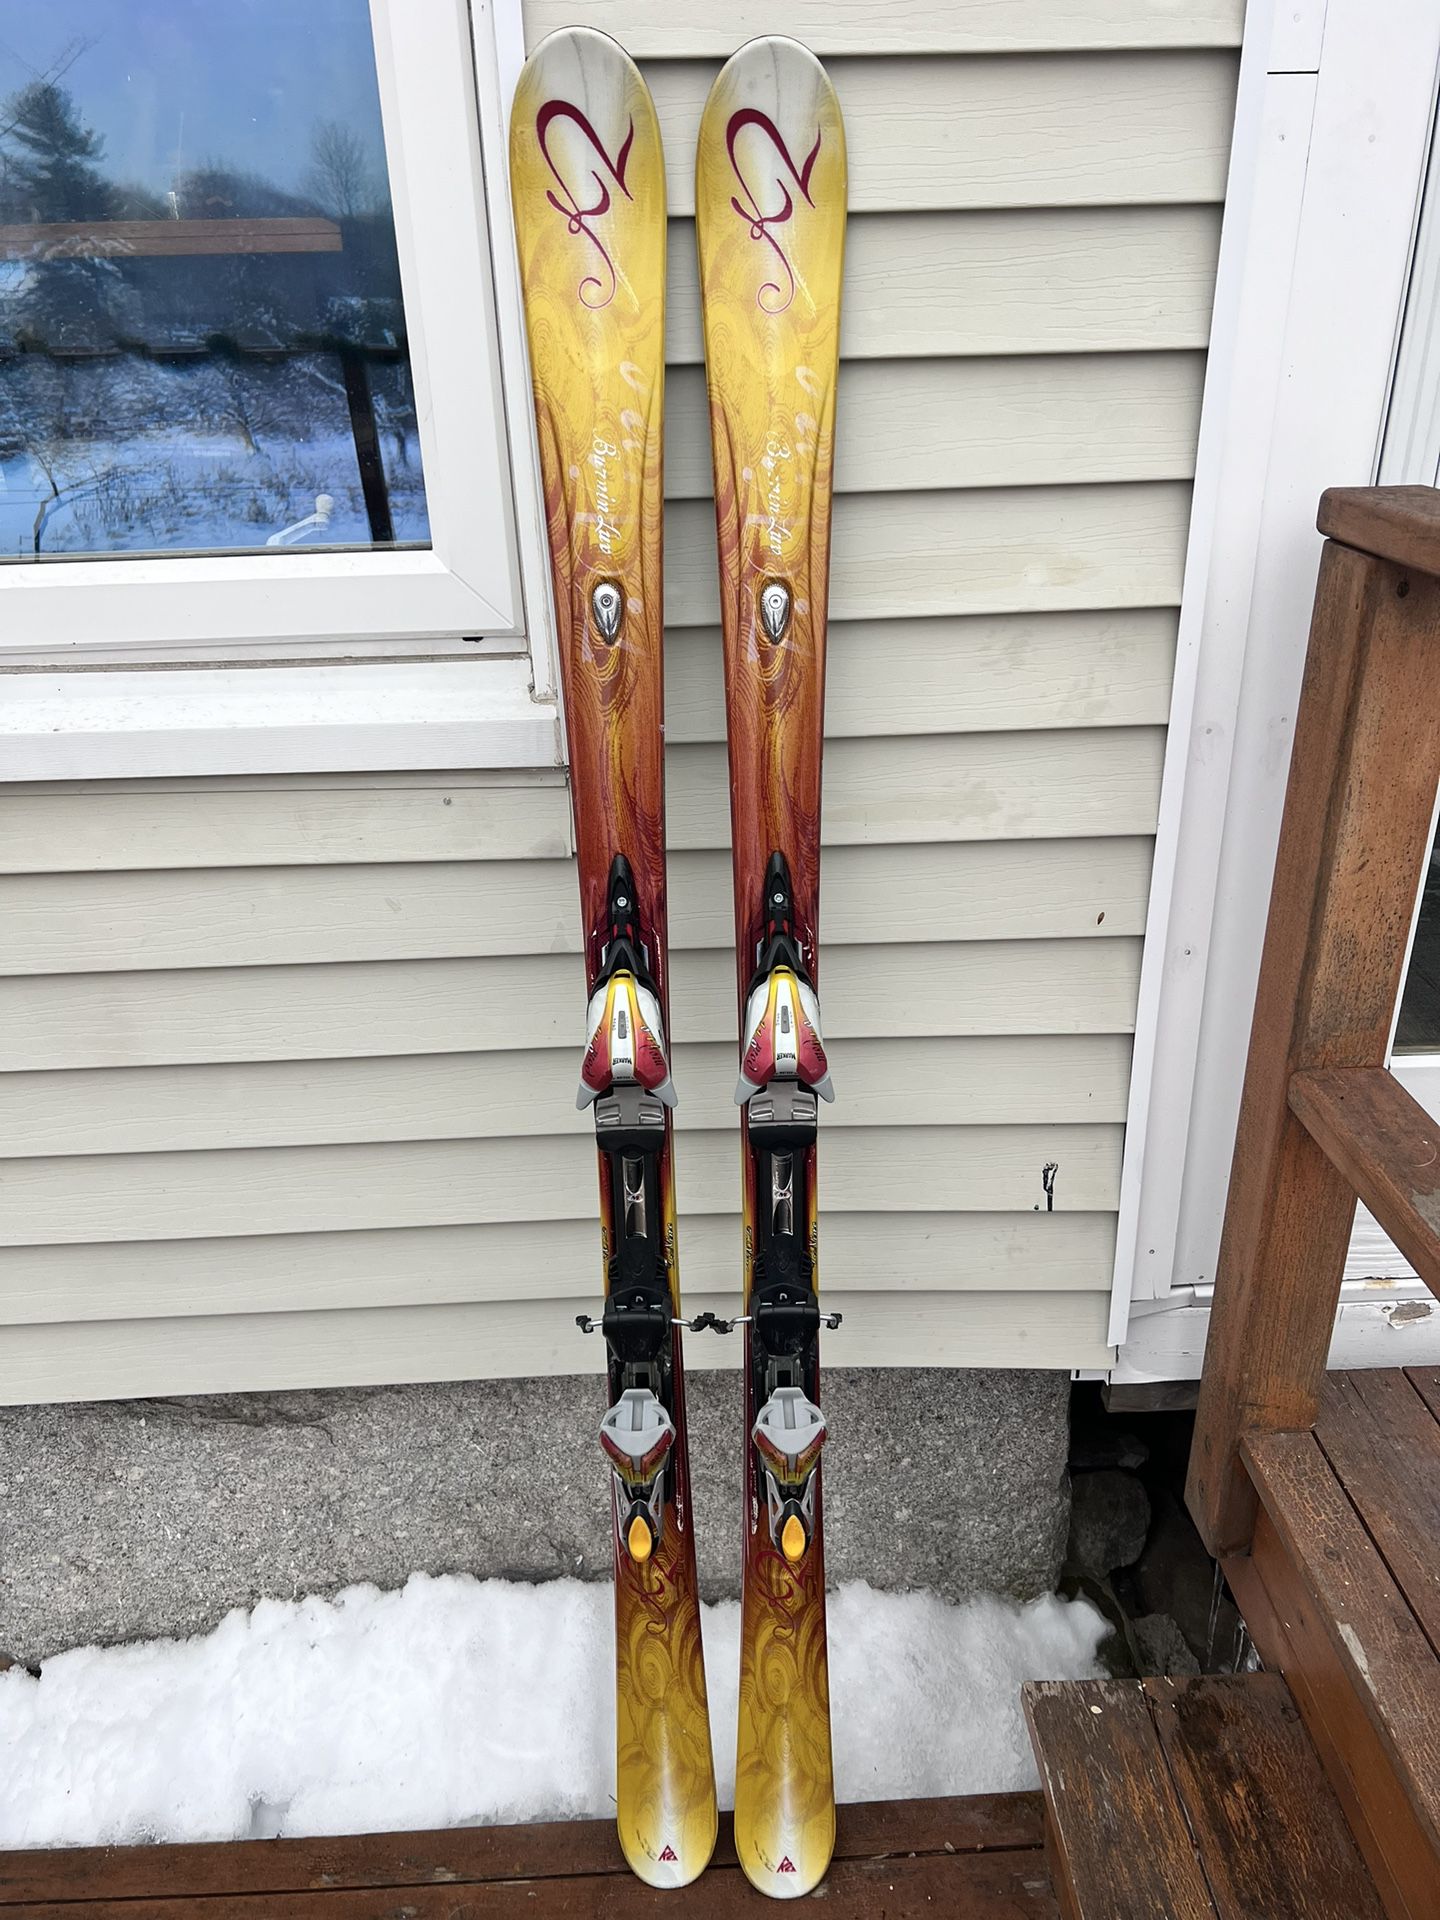 K2 Skis With Bindings